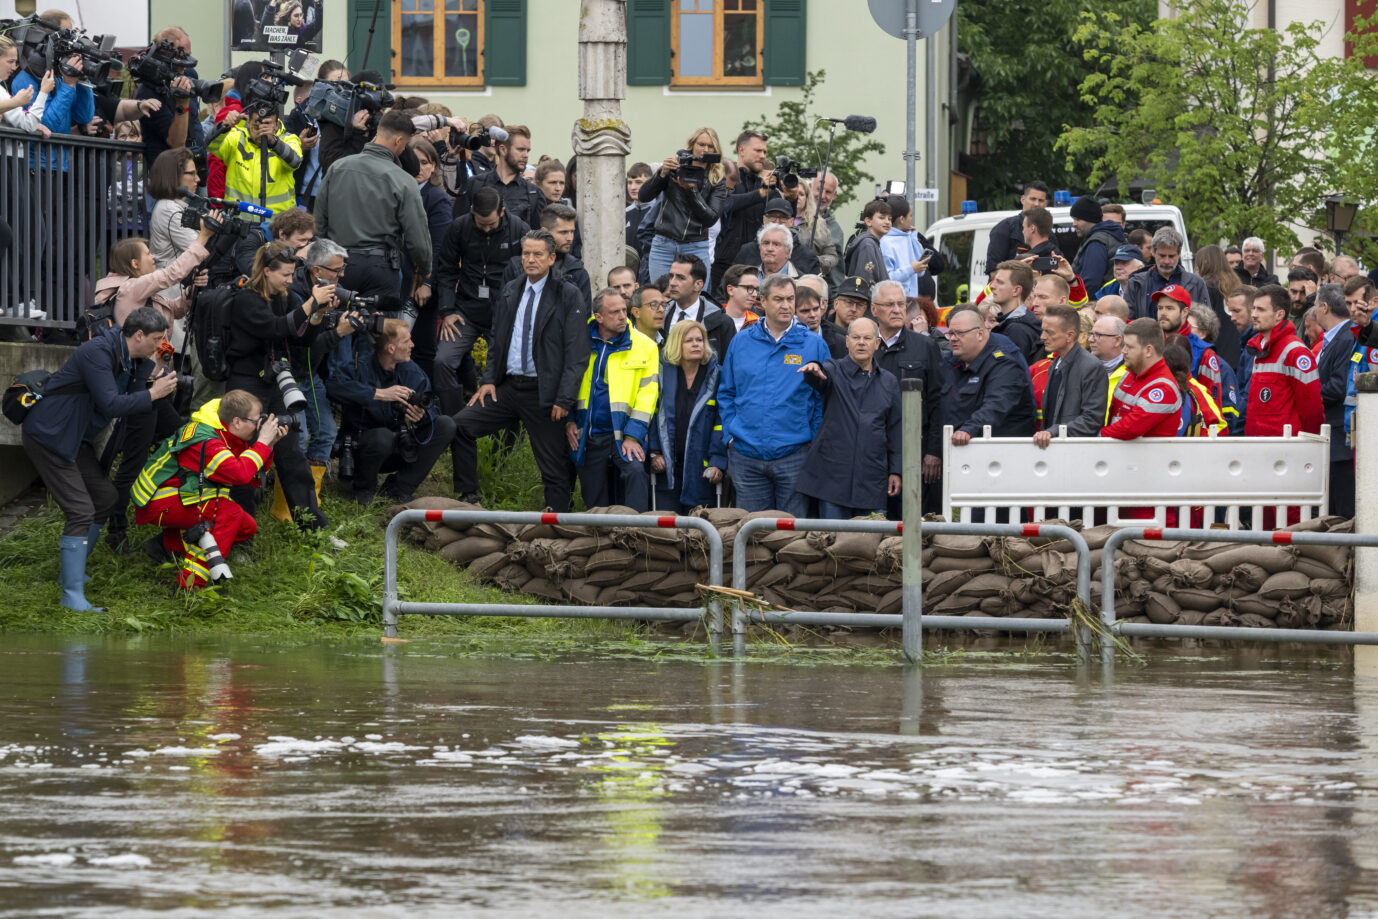 Auf dem Foto befinden sich Bundeskanzler Olaf Scholz, Bayerns Ministerpräsidenten Markus Söder und Bundesinnenministerin Nancy Faeser inmitten einer großen Menschenmenge in Markt Rechertshofen. Das Gebiet ist derzeit vom Hochwasser betroffen. (Themenbild)